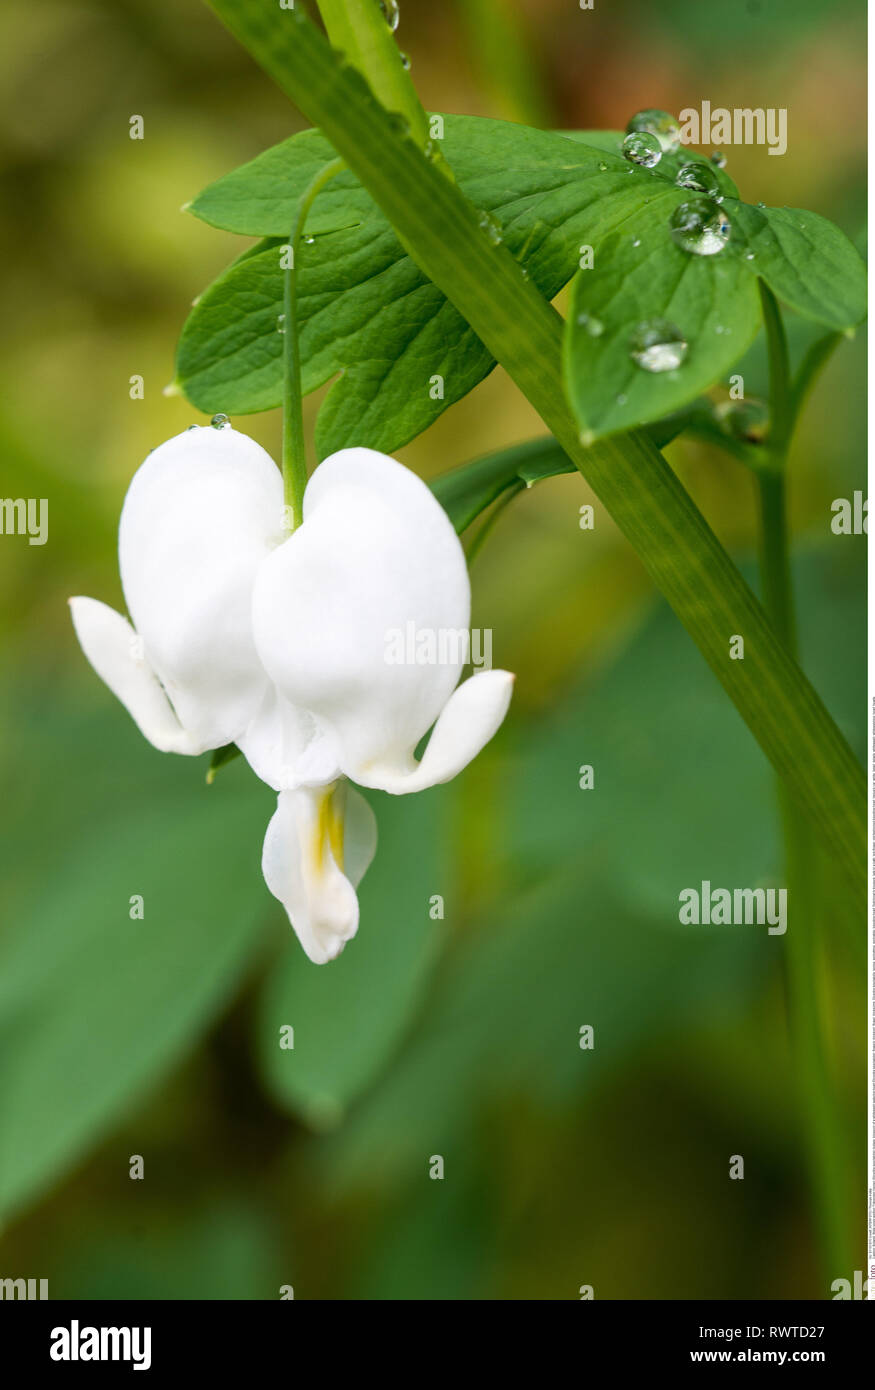 La botanica, fiore di una dissimulazione sentire di irrigazione, attenzione! Per Greetingcard-Use / Postcard-Use nei Paesi di lingua tedesca talune restrizioni possono applicare Foto Stock